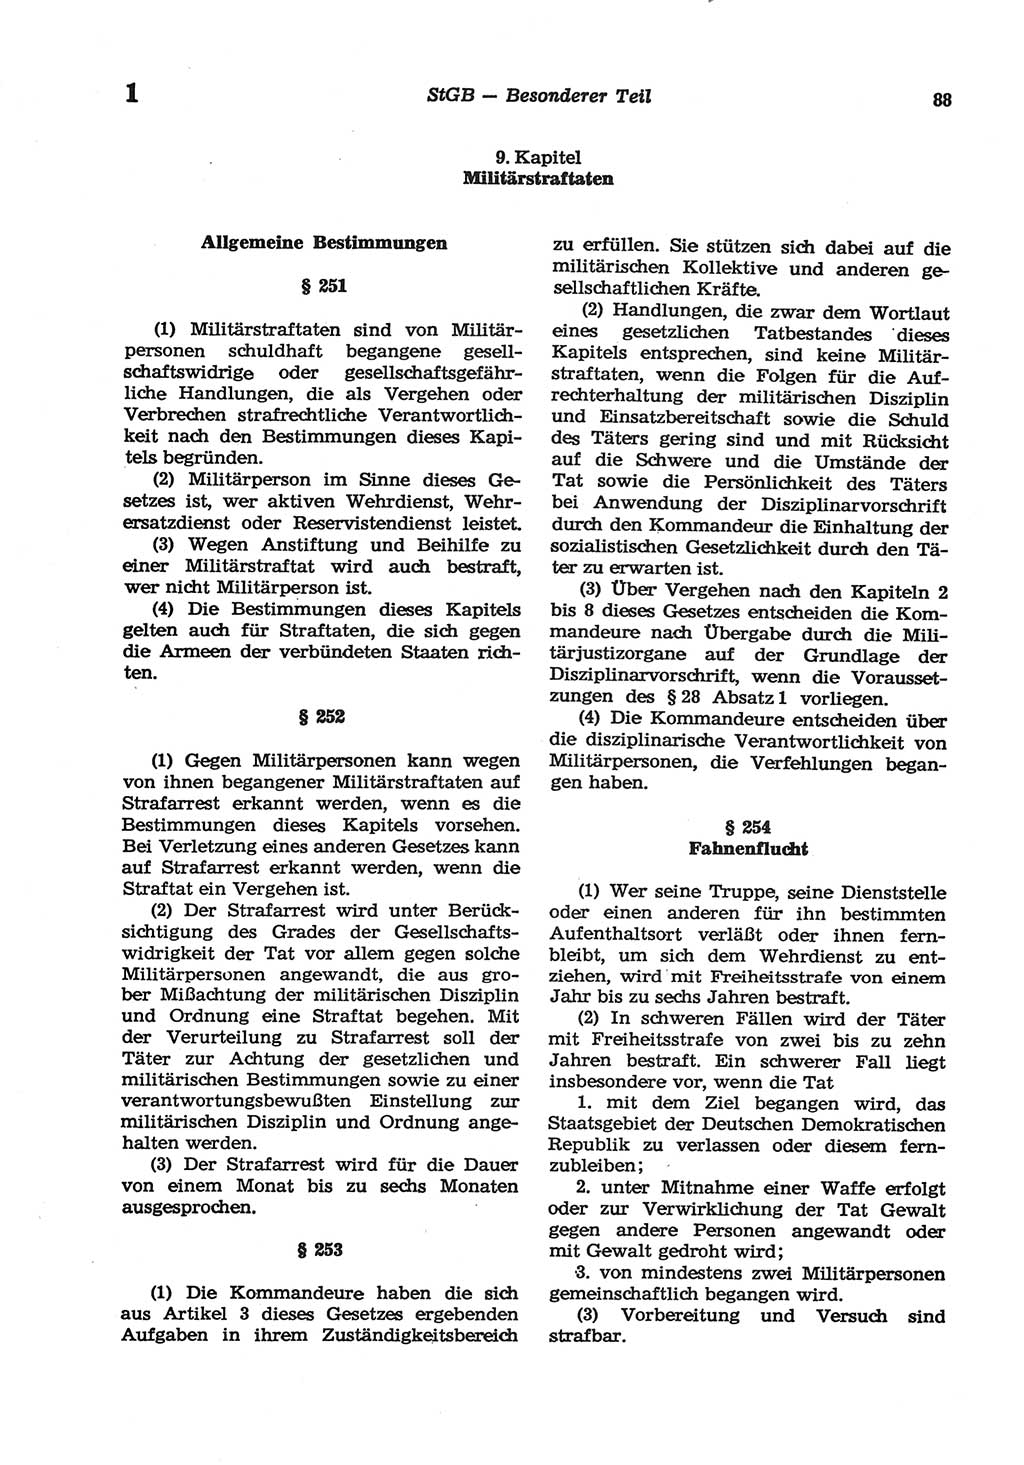 Strafgesetzbuch (StGB) der Deutschen Demokratischen Republik (DDR) und angrenzende Gesetze und Bestimmungen 1977, Seite 88 (StGB DDR Ges. Best. 1977, S. 88)